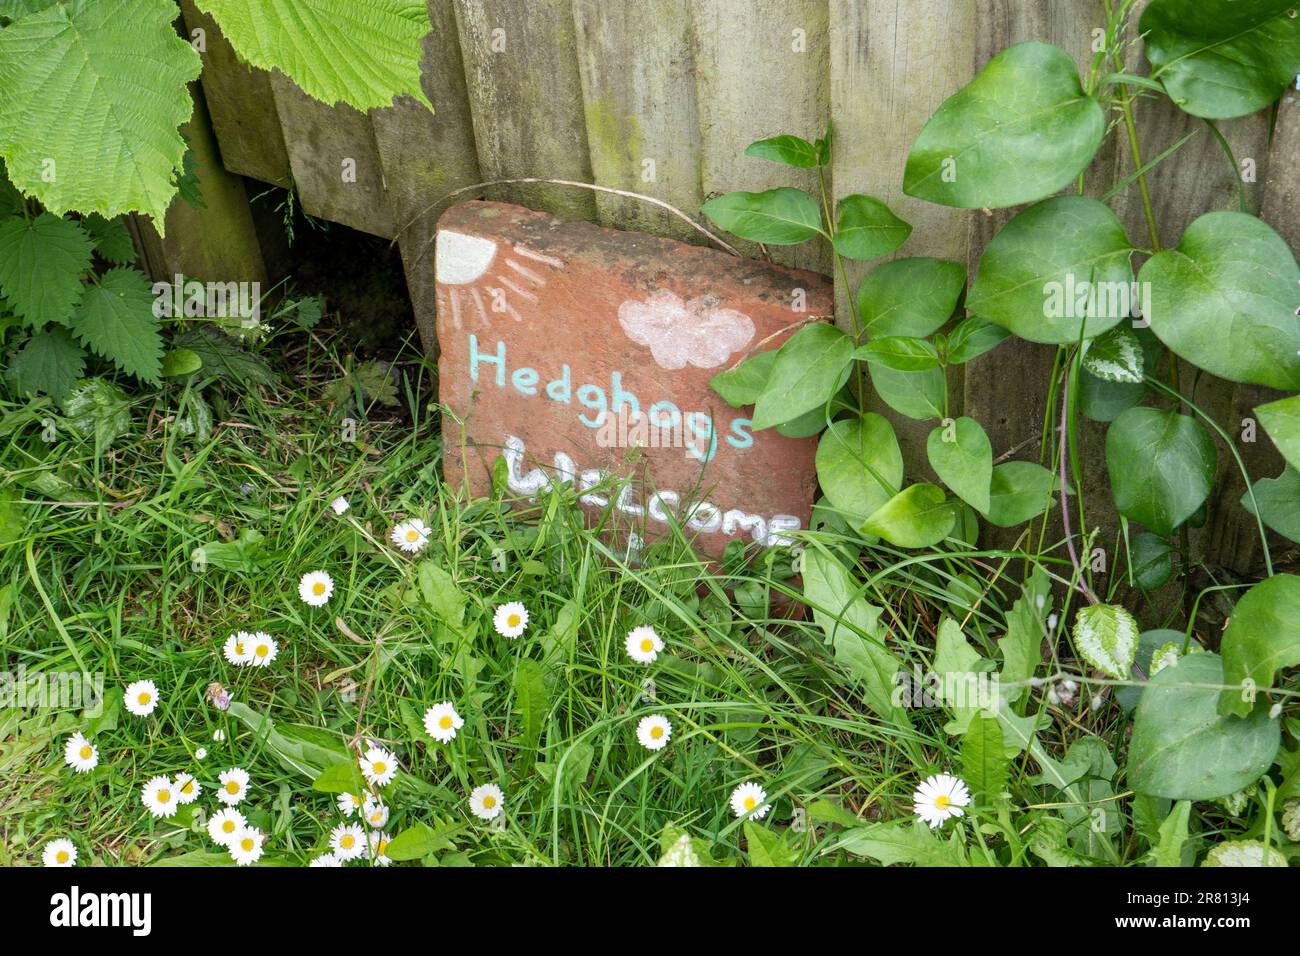 IGEL-WILLKOMMENSSCHILD. Charmantes, falsch geschriebenes Zeichen, das die Bedeutung von Hedghogs im Hausgarten mit einem Übergang zum Lebensraum projiziert Stockfoto